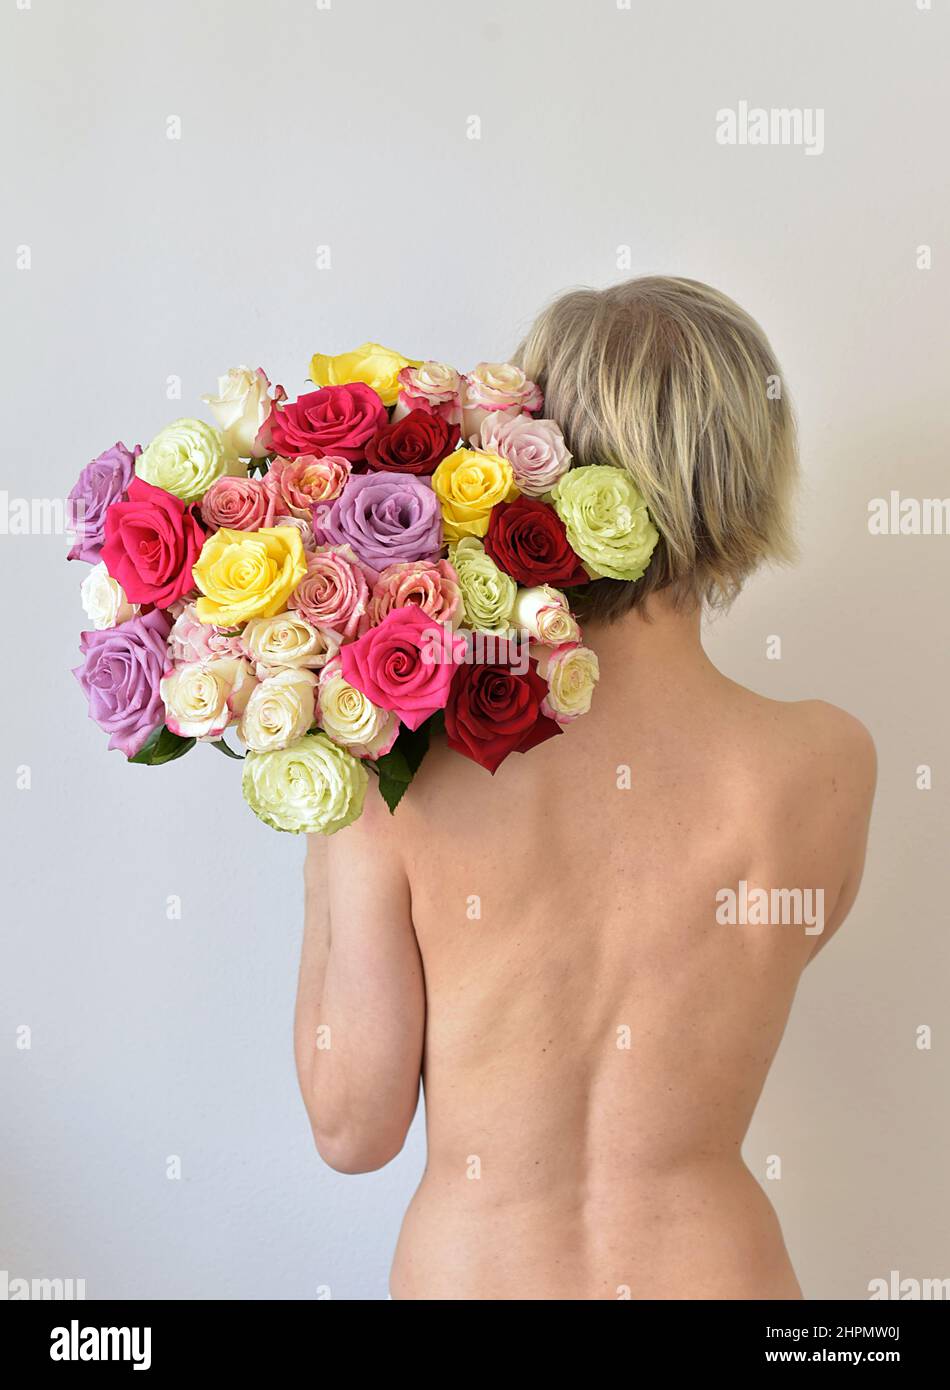 donna nuda che tiene un bouquet colorato di rose Foto Stock